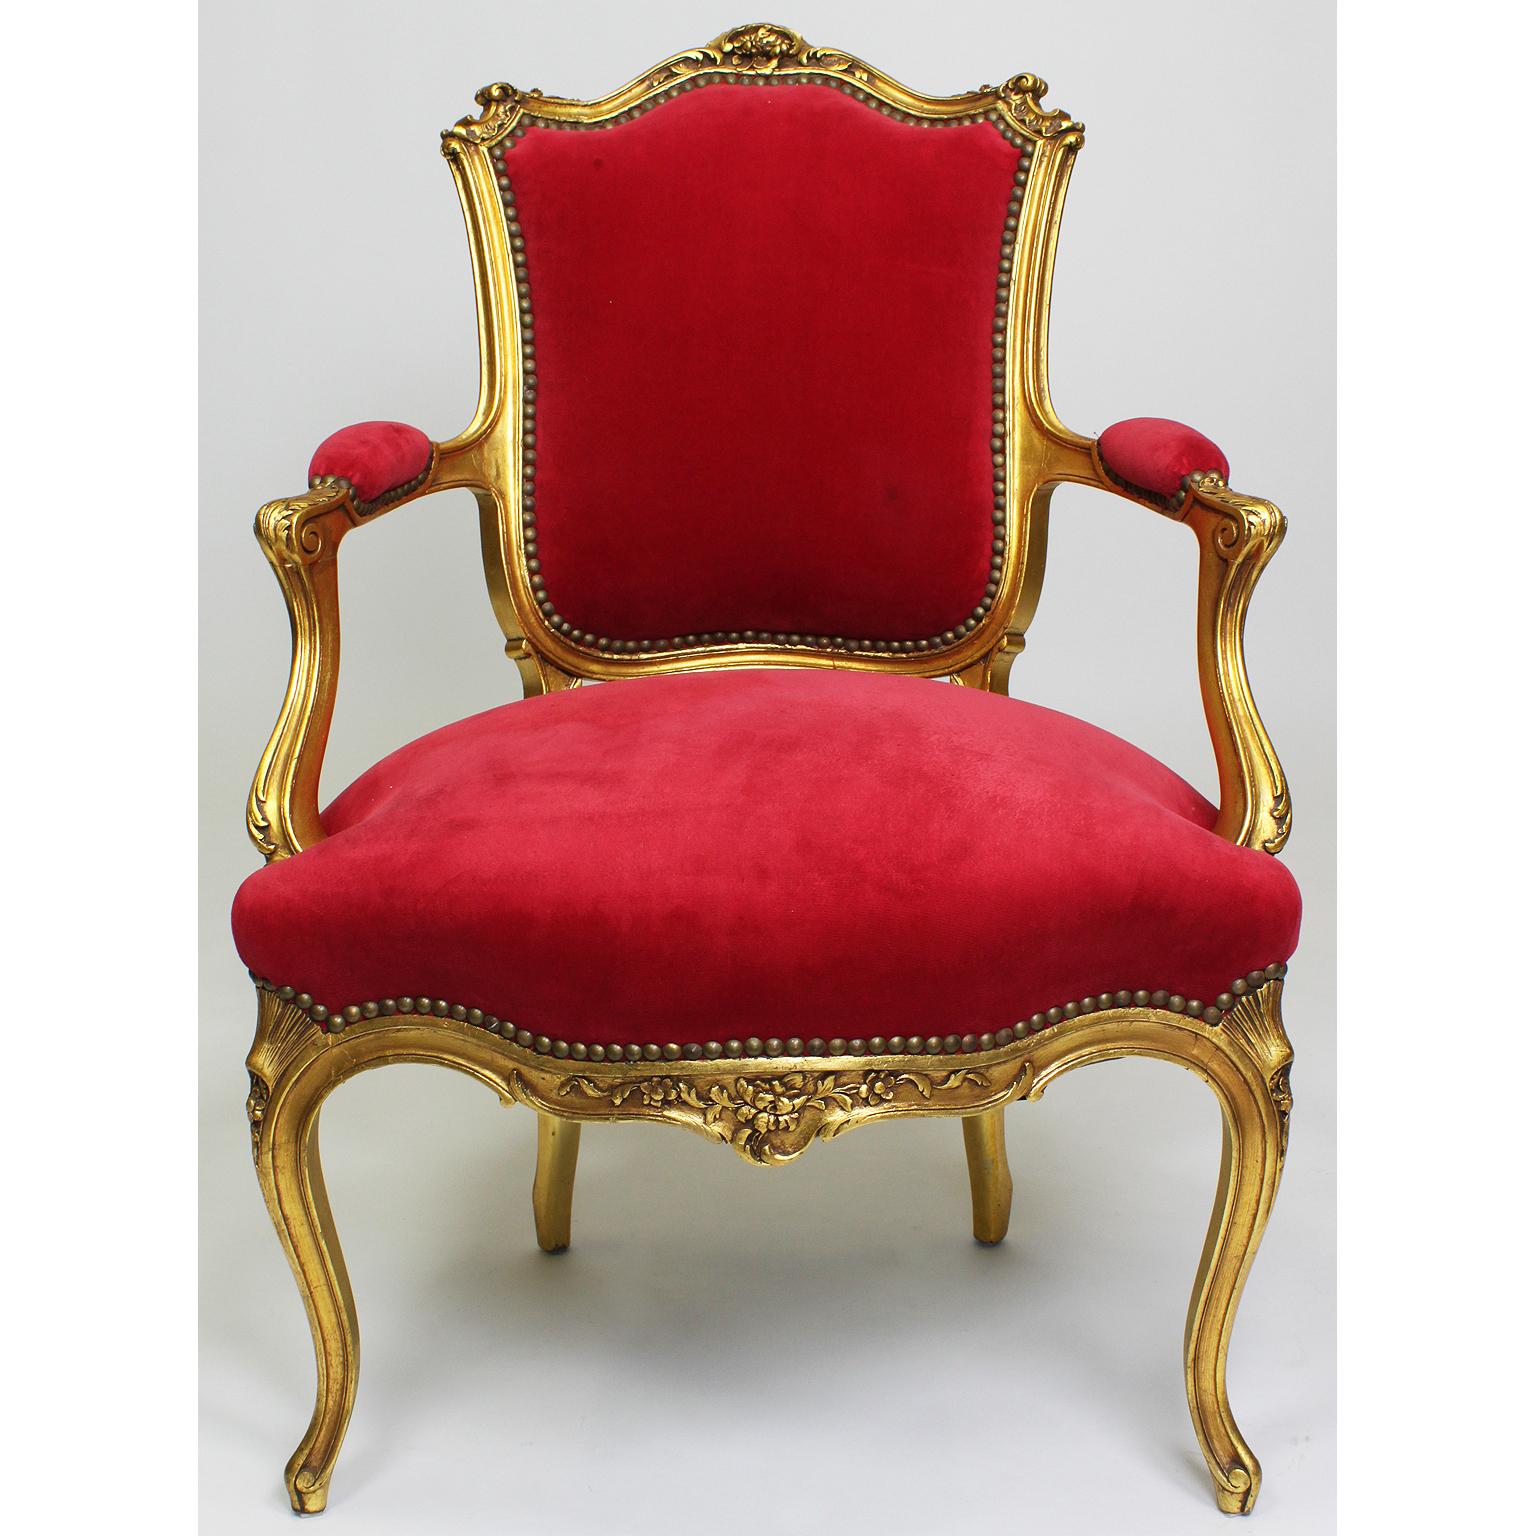 Paire de fauteuils rococo de style Louis XV français en bois doré sculpté. Les cadres en bois finement sculptés avec des accoudoirs ouverts à volutes et rembourrés et des pieds cabriolets. Tapissé d'un velours rouge, Paris, vers 1900.

Mesures :